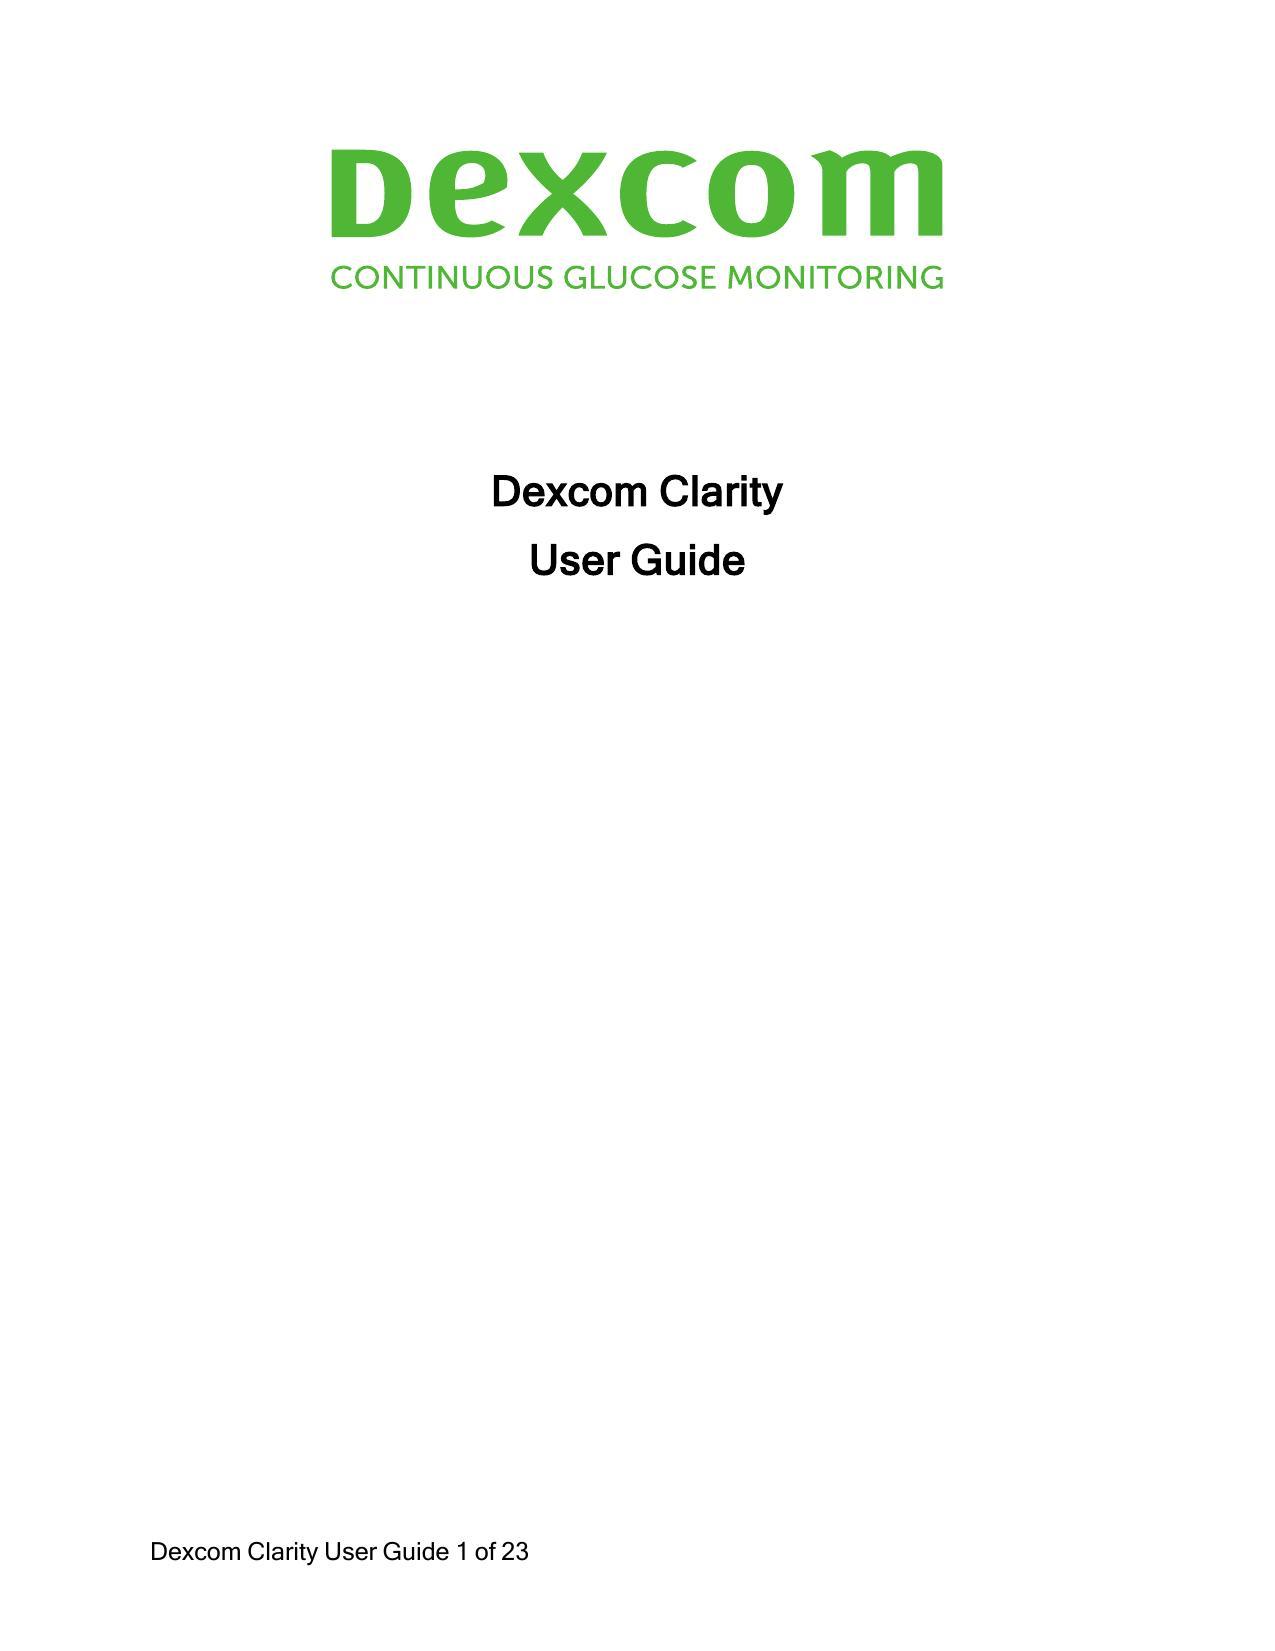 dexcom-clarity-user-guide.pdf